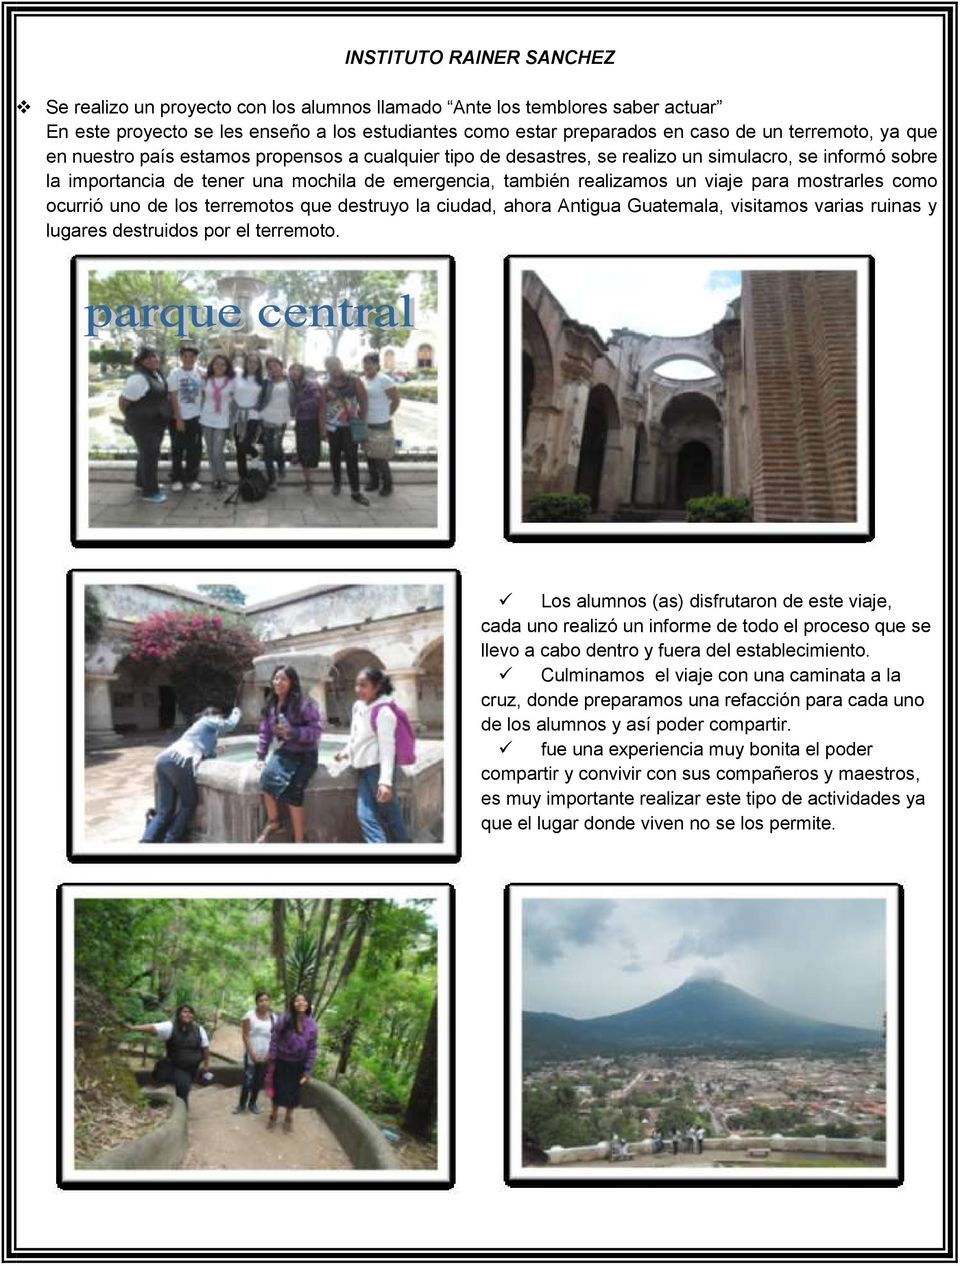 mostrarles como ocurrió uno de los terremotos que destruyo la ciudad, ahora Antigua Guatemala, visitamos varias ruinas y lugares destruidos por el terremoto.